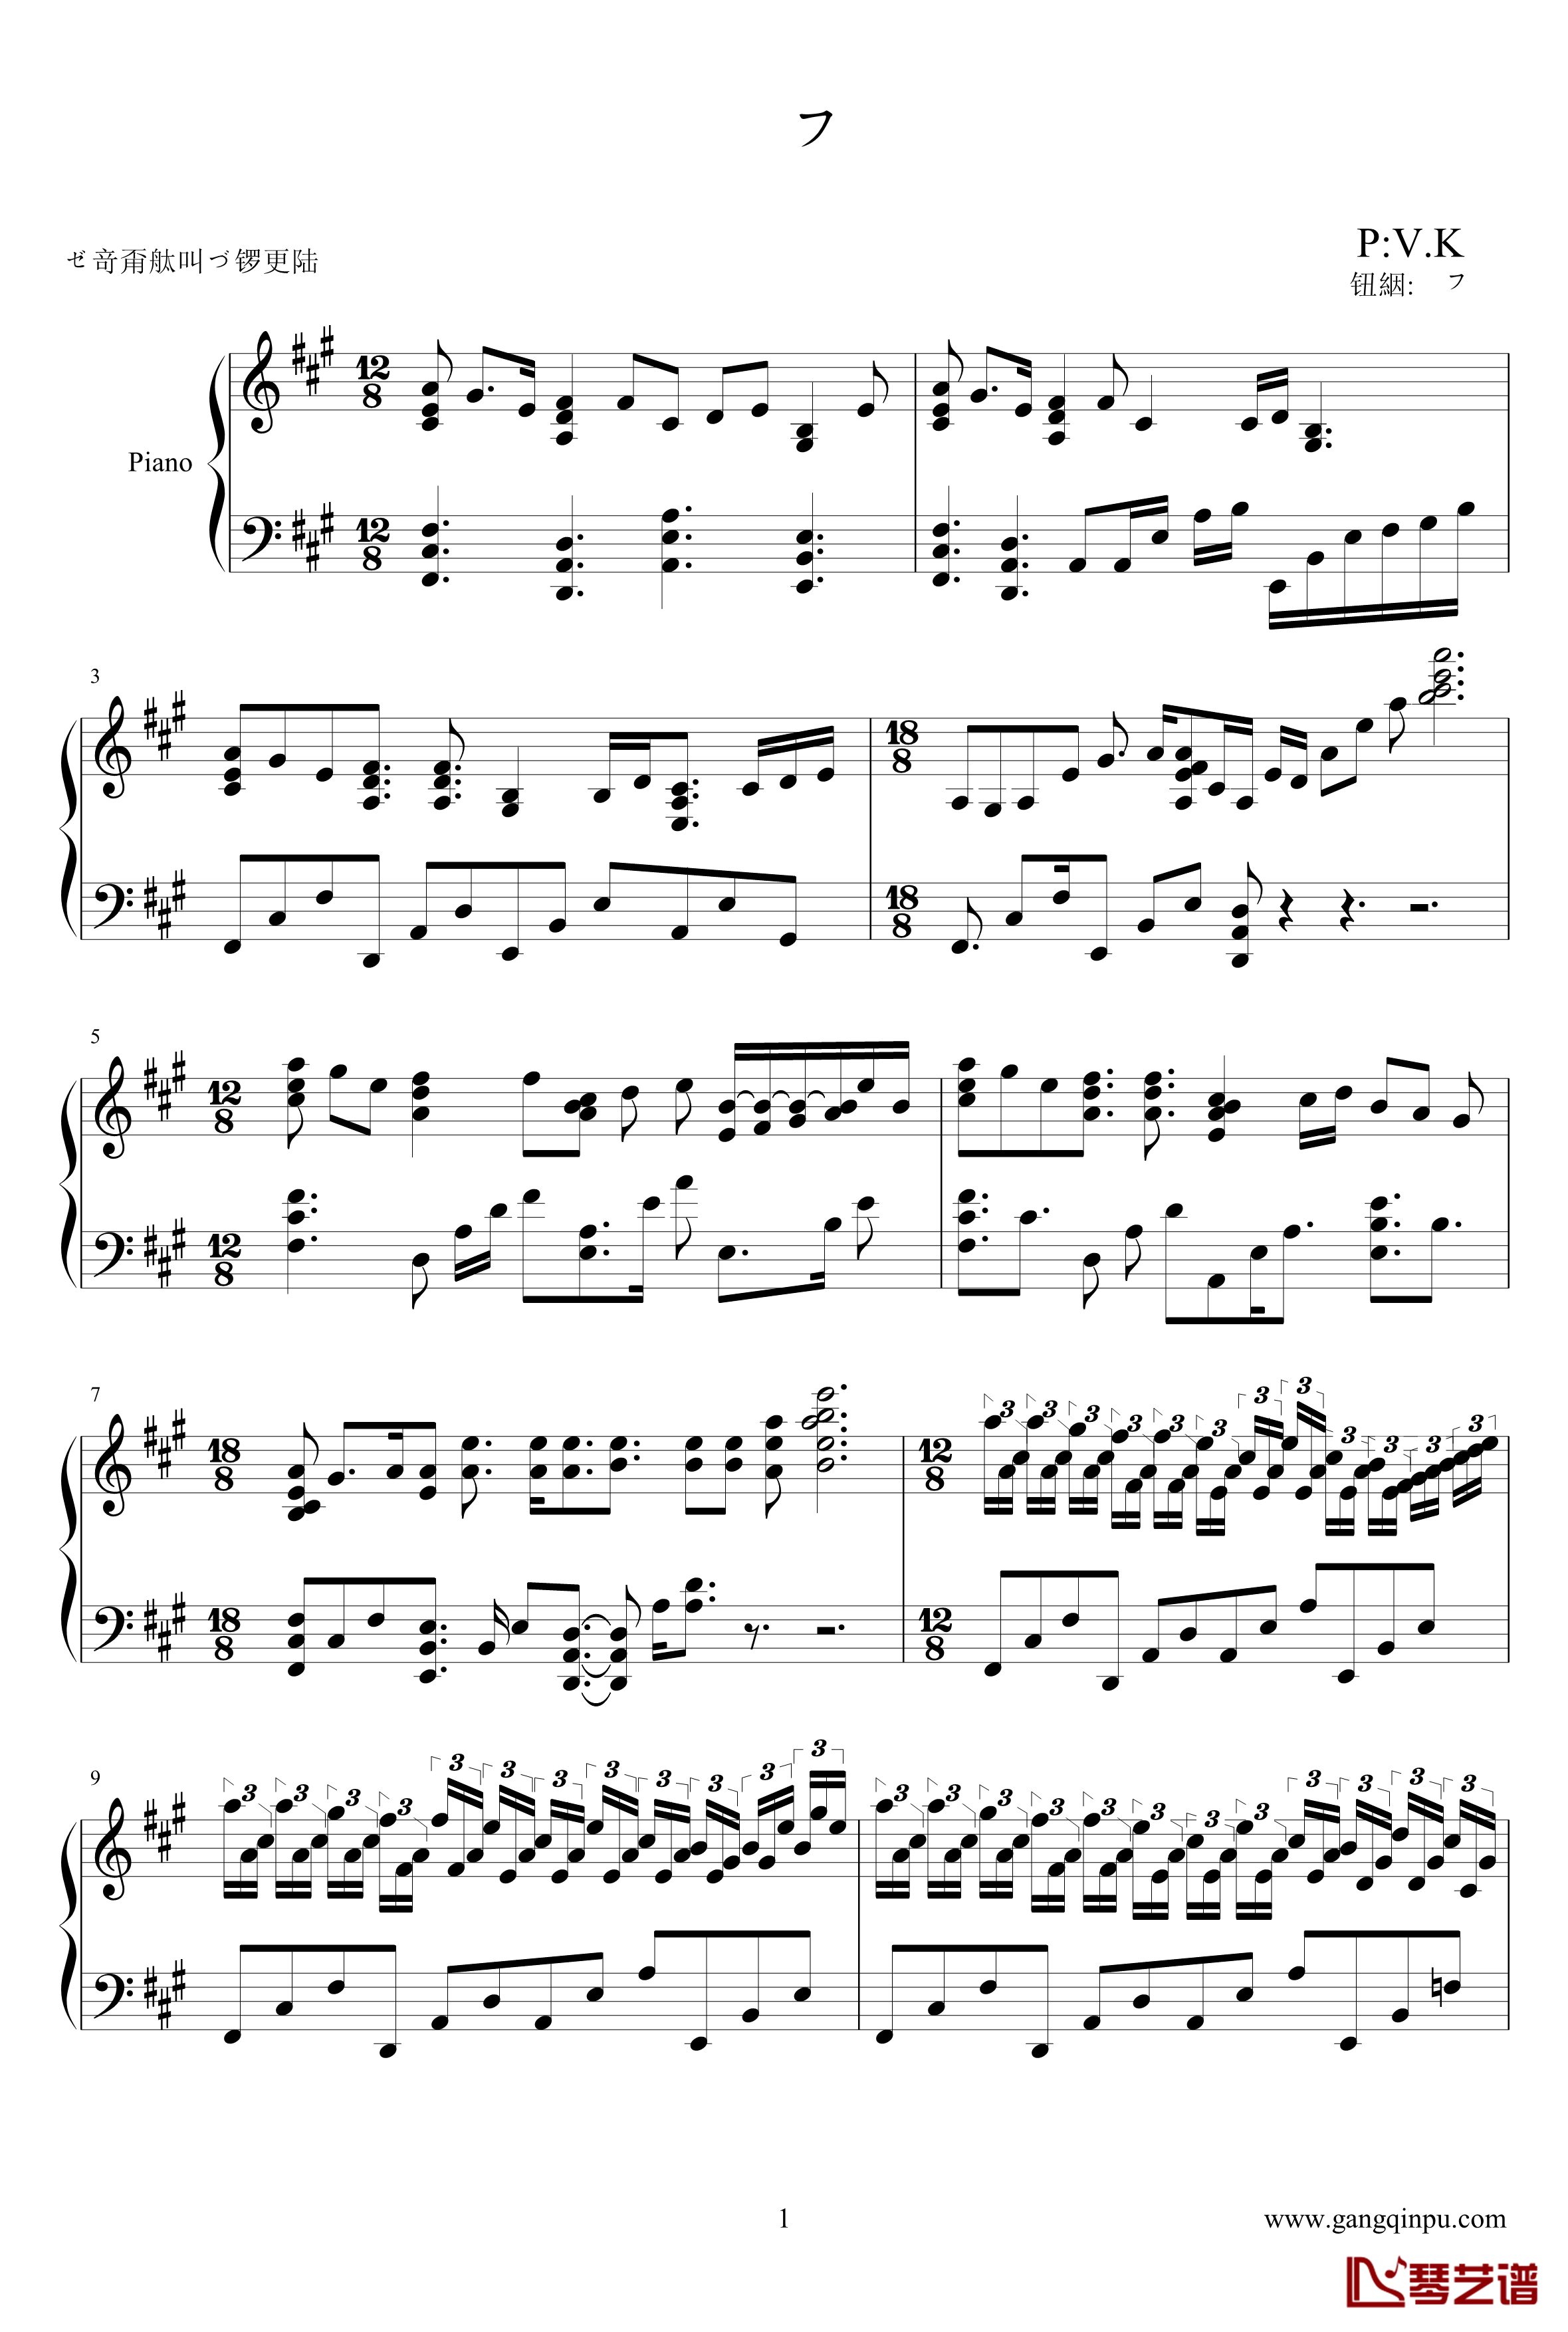 纯白钢琴谱-完整版-V.K克1